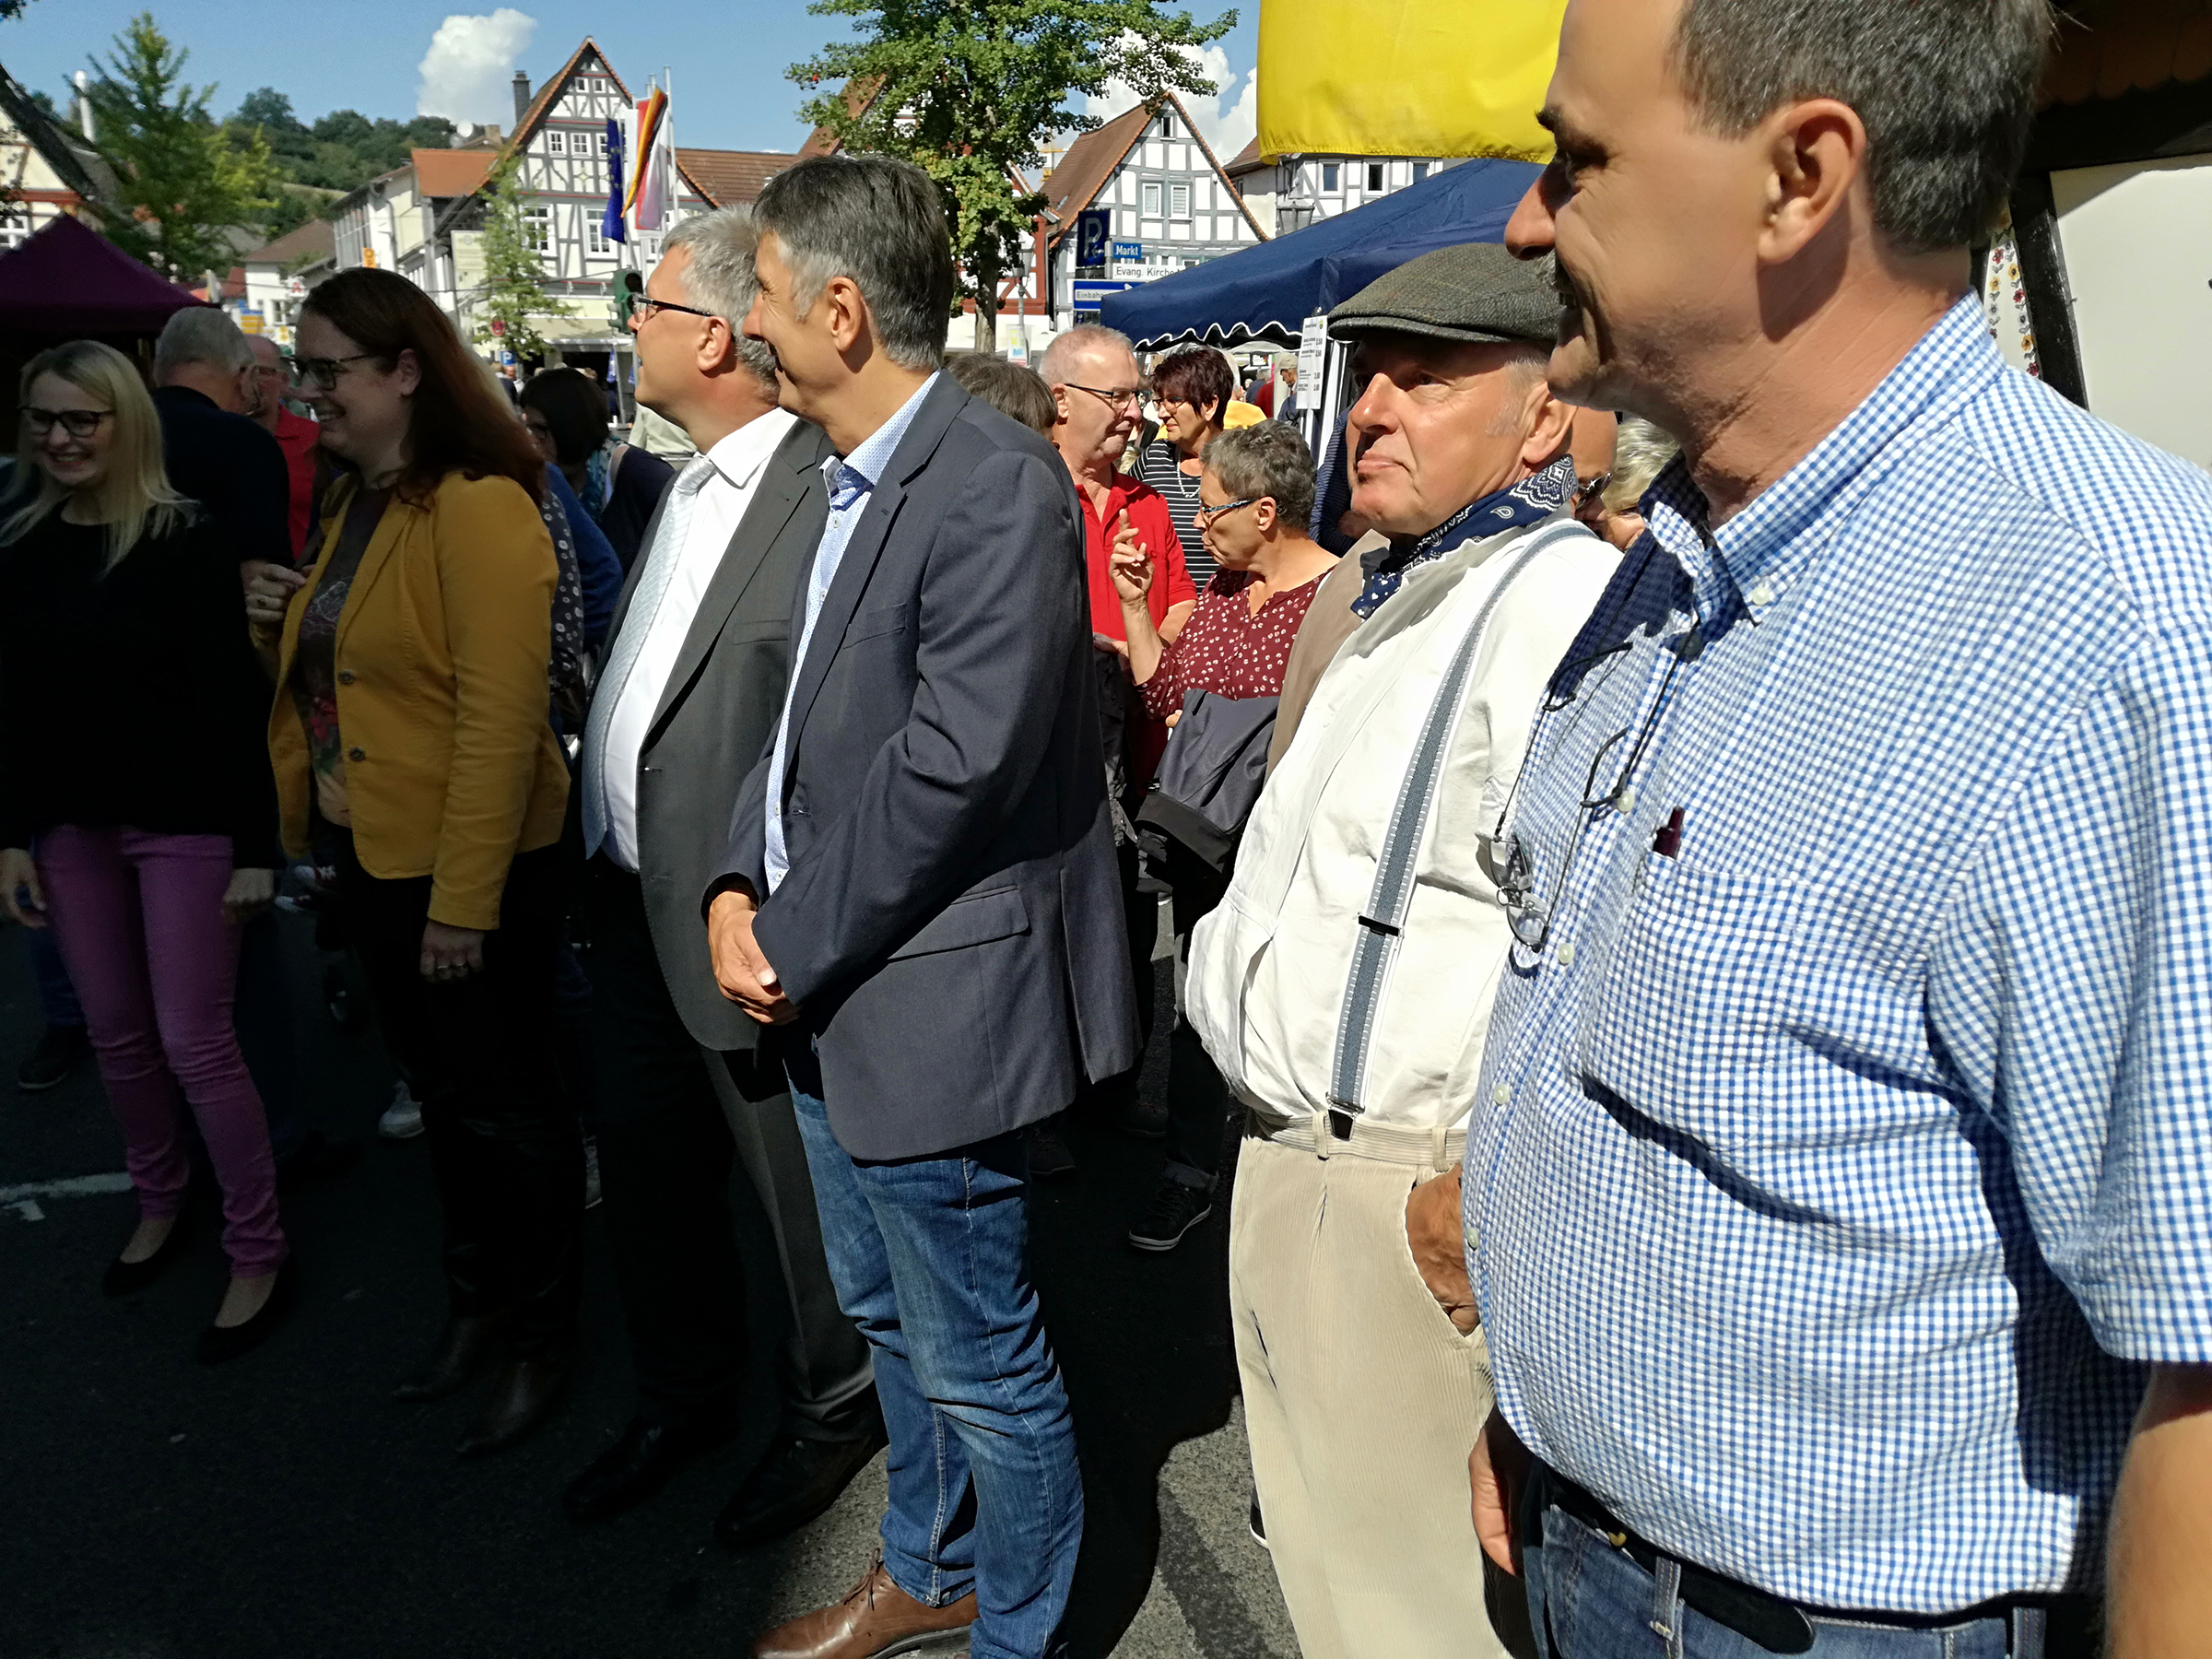 Bürgermeister Seum besucht den Stand von Borsdorf